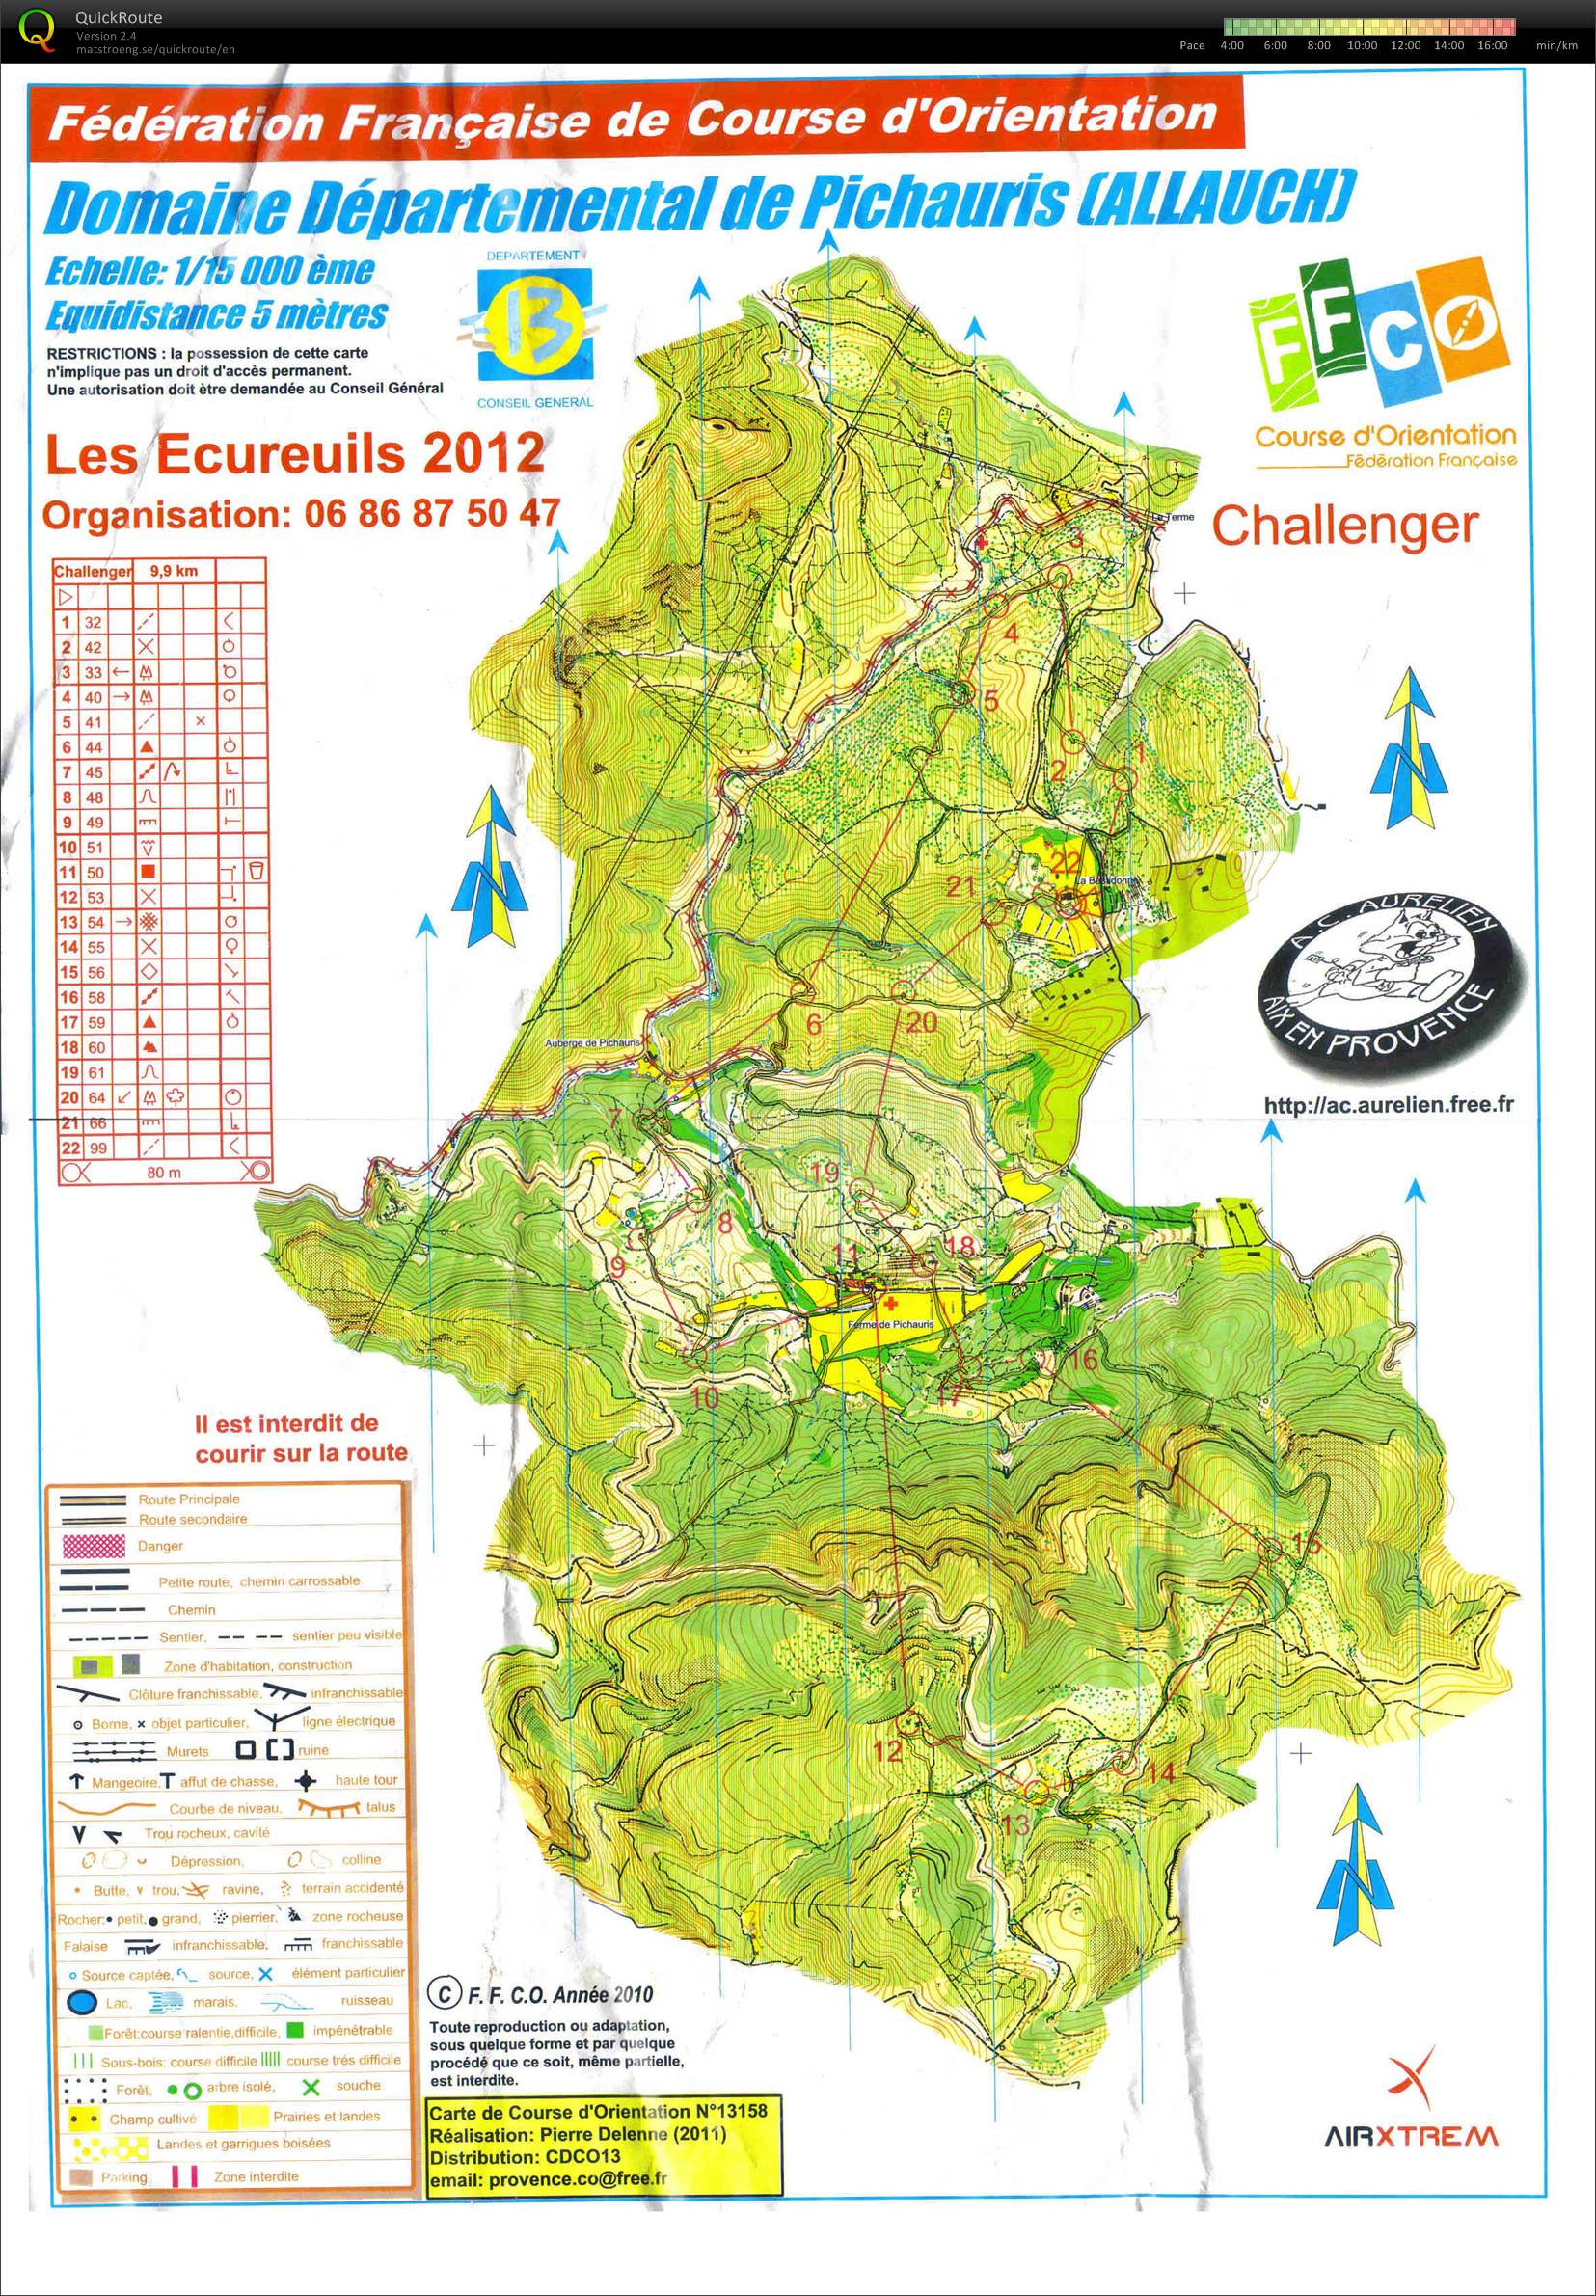 Les Ecureuils - Challenger (29-01-2012)